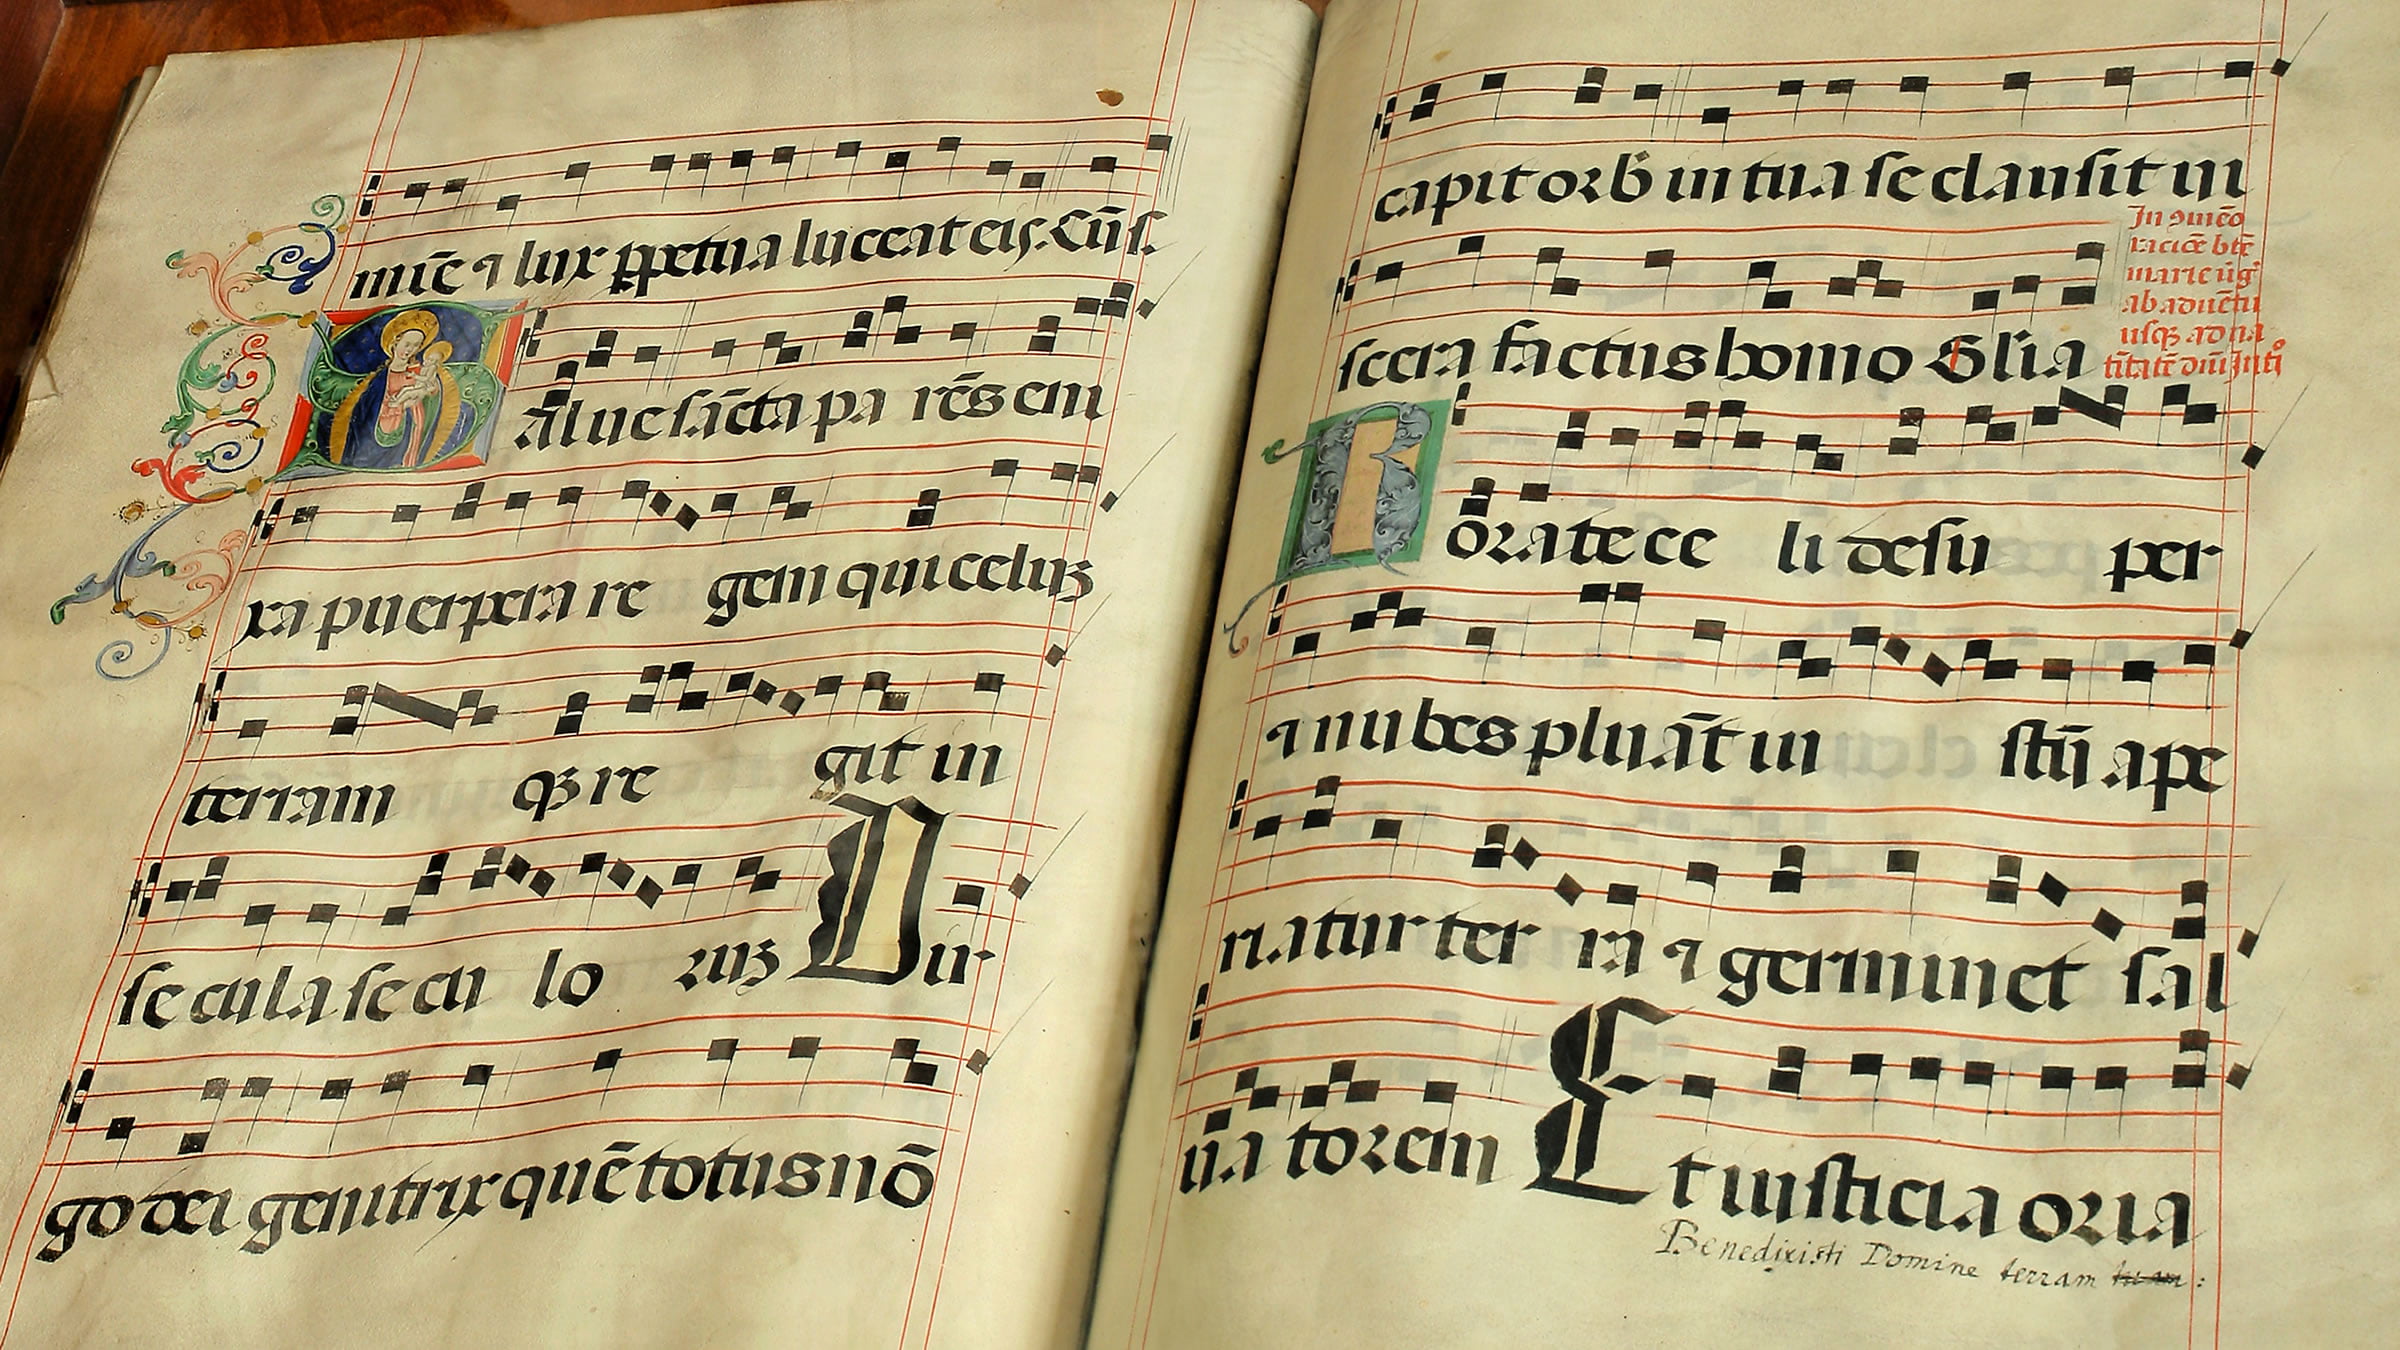 Partitura de una canción medieval